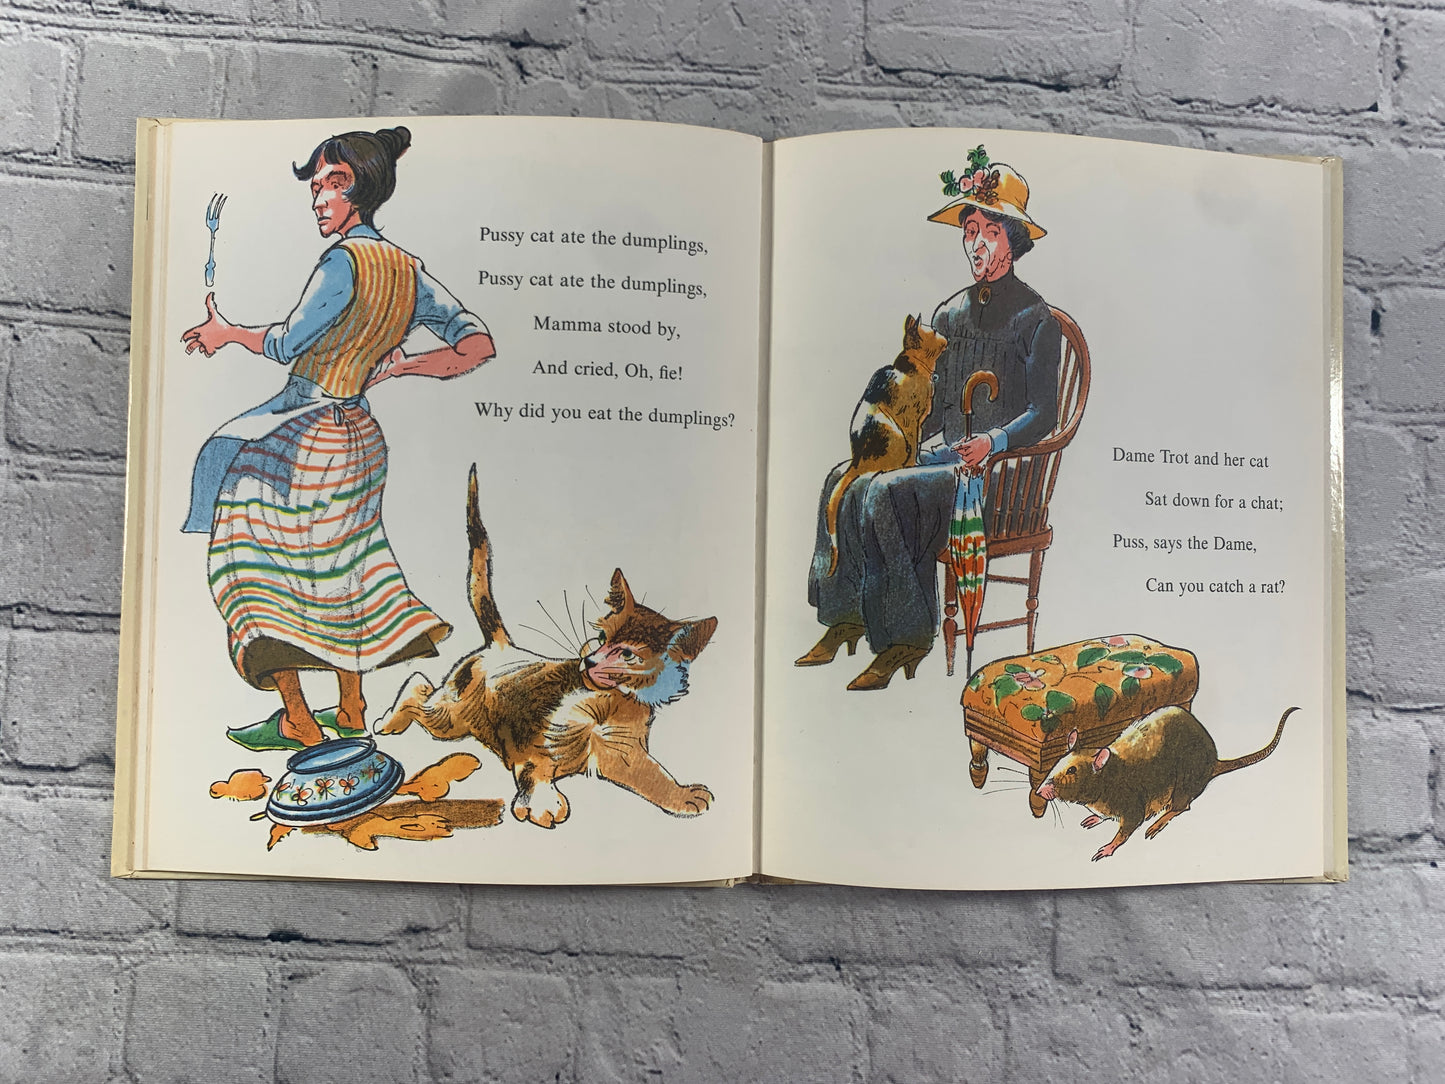 Cat Tales by Nancy Dingman Watson [1961]